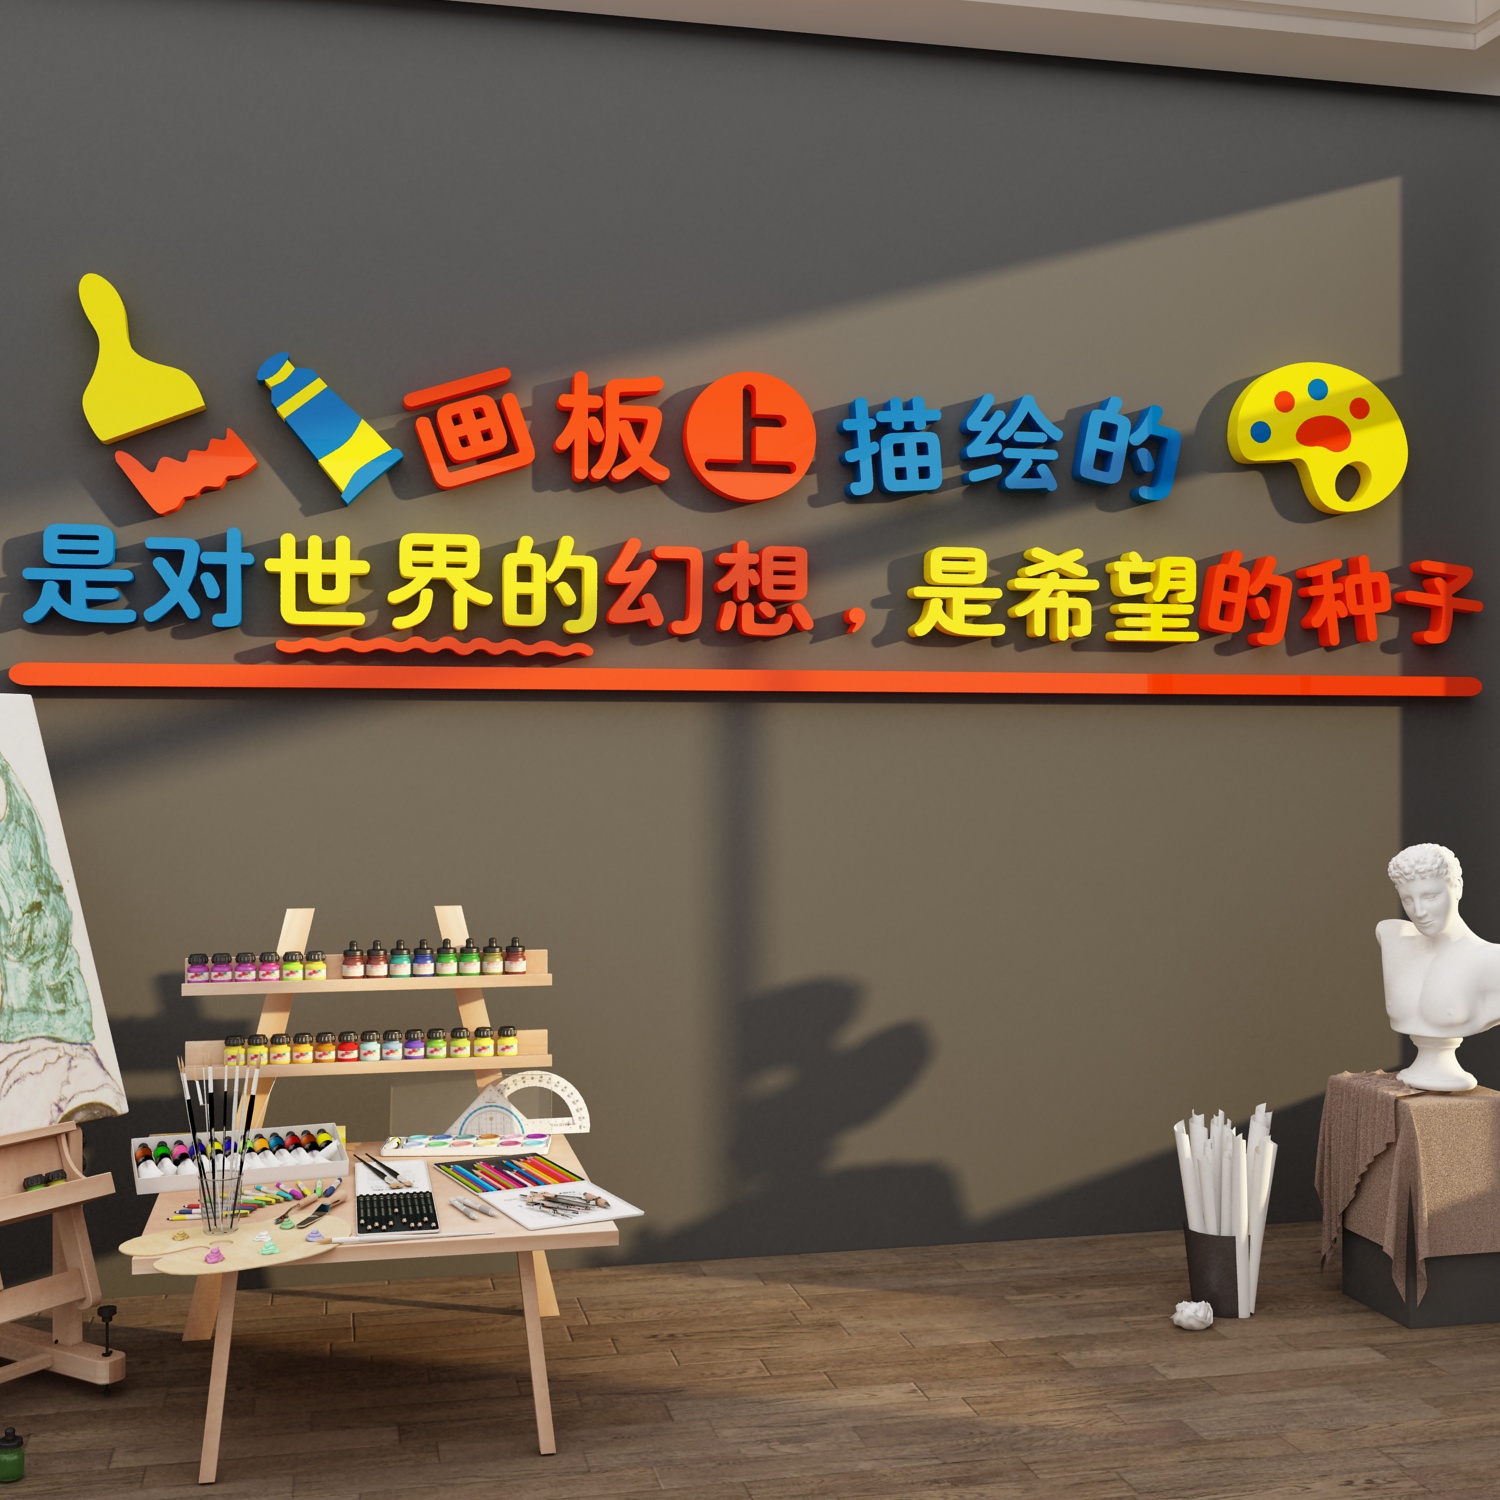 画室布置美术教室墙面装饰画素描幼儿园艺术培训机构环创文化贴纸